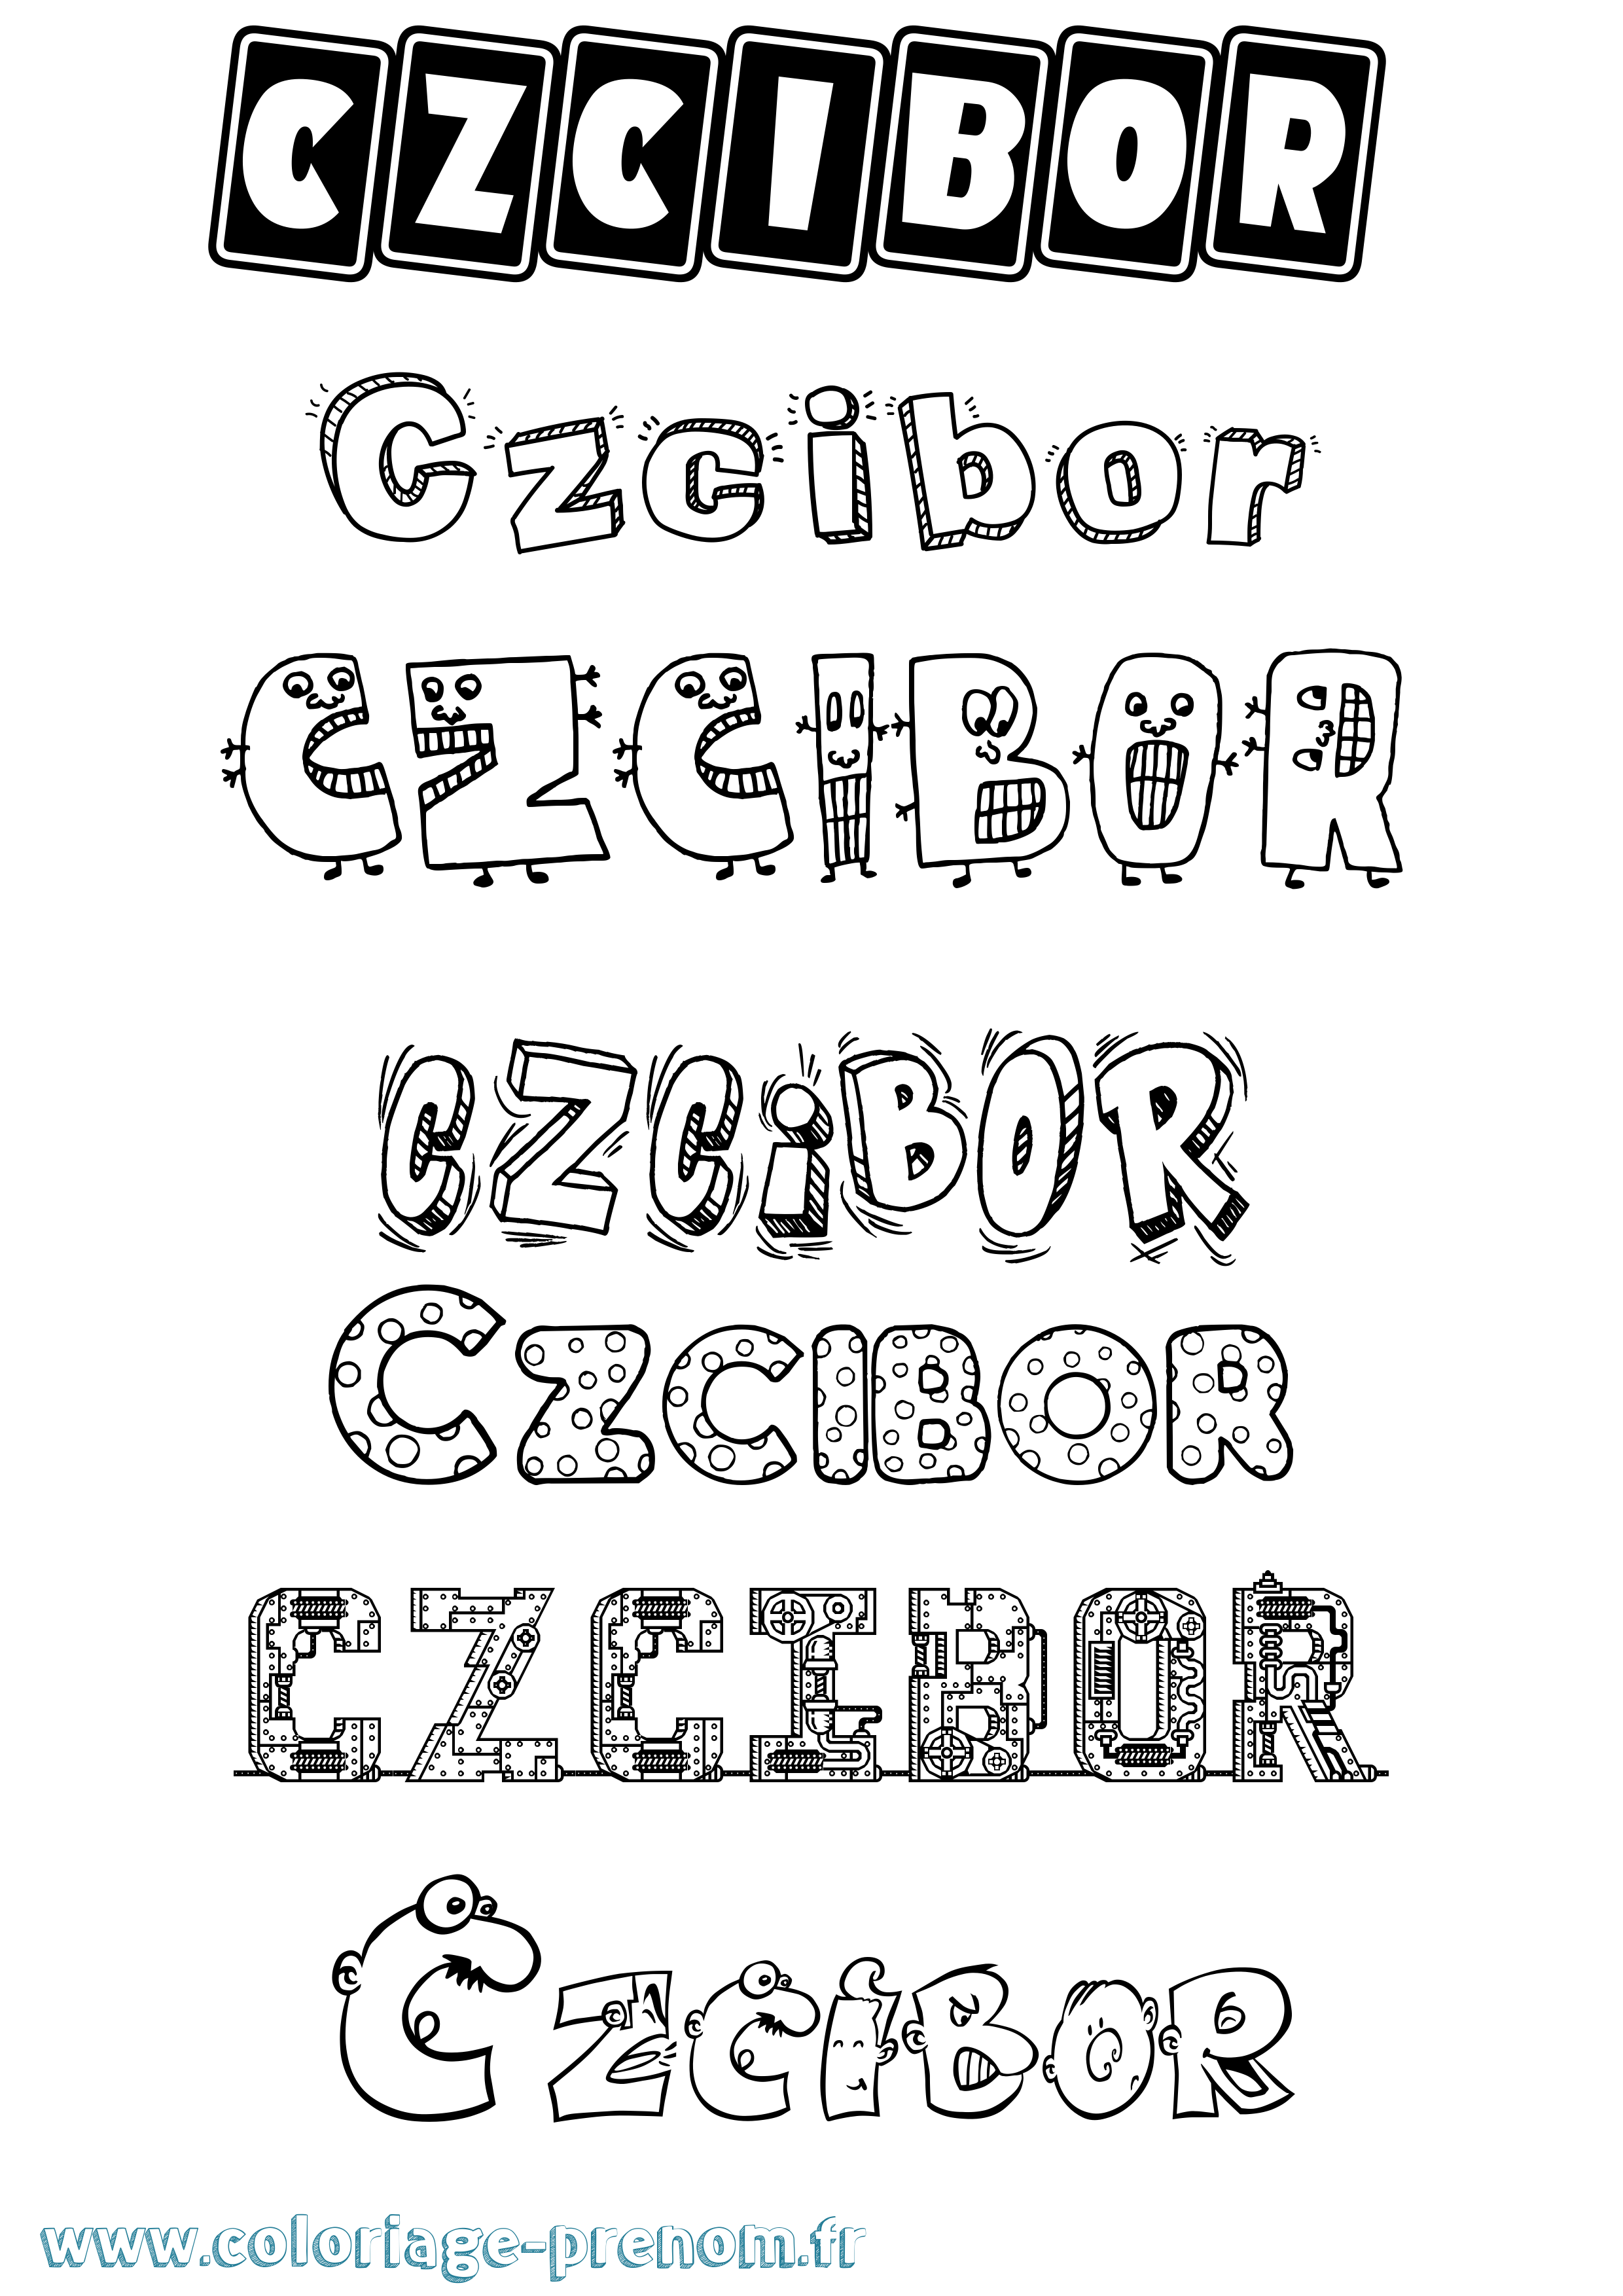 Coloriage prénom Czcibor Fun